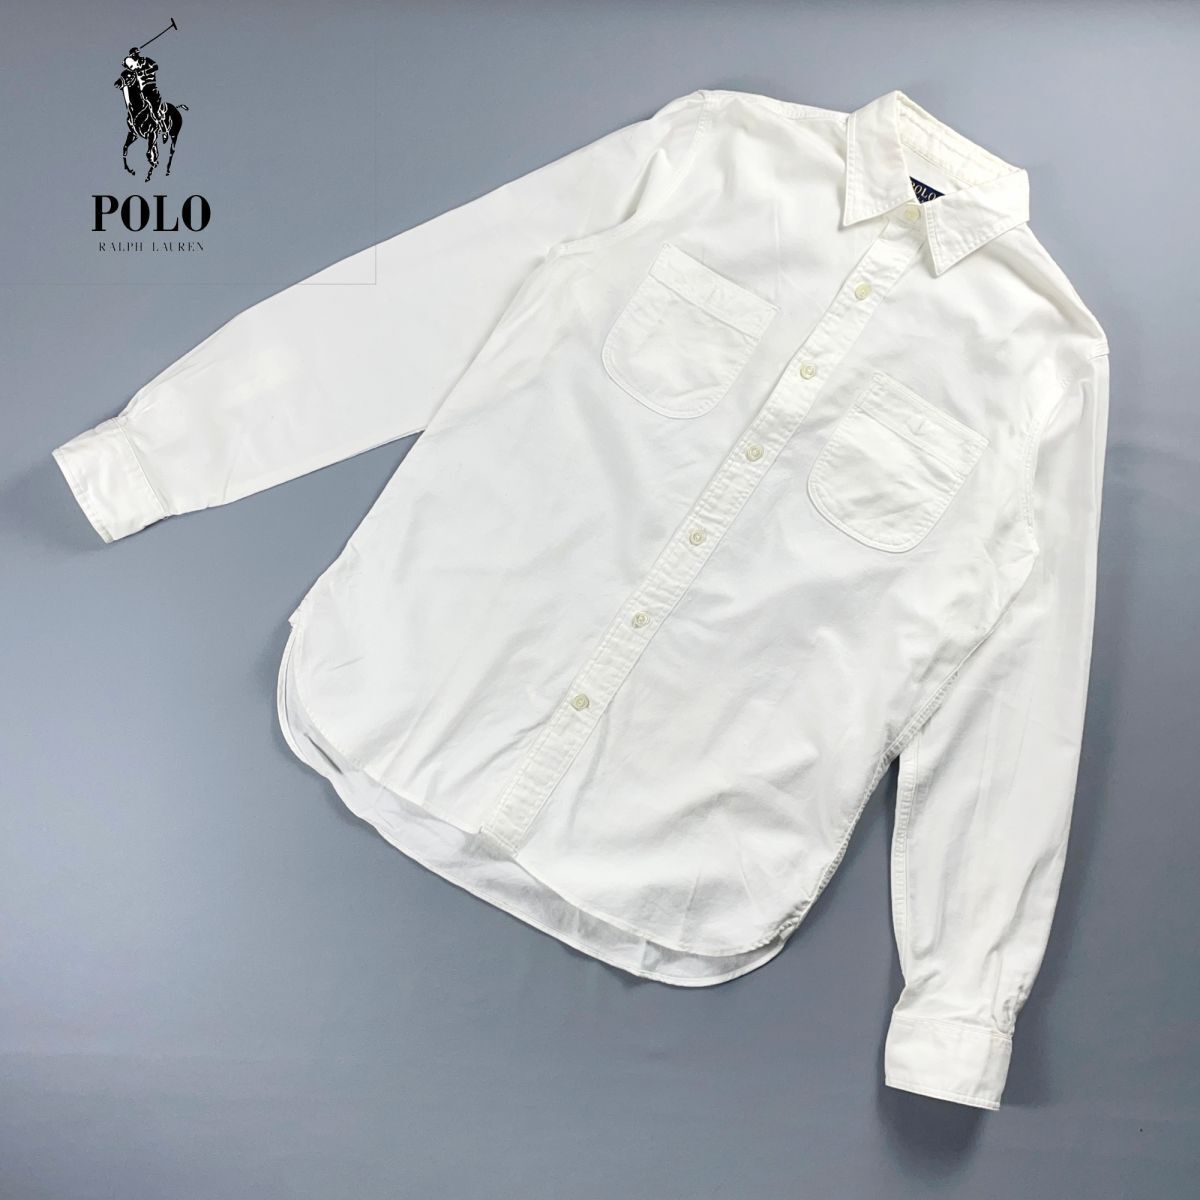 美品 POLO RALPH LAUREN ポロラルフローレン コットンシャツ トップス メンズ 白 ホワイト サイズS*NC707